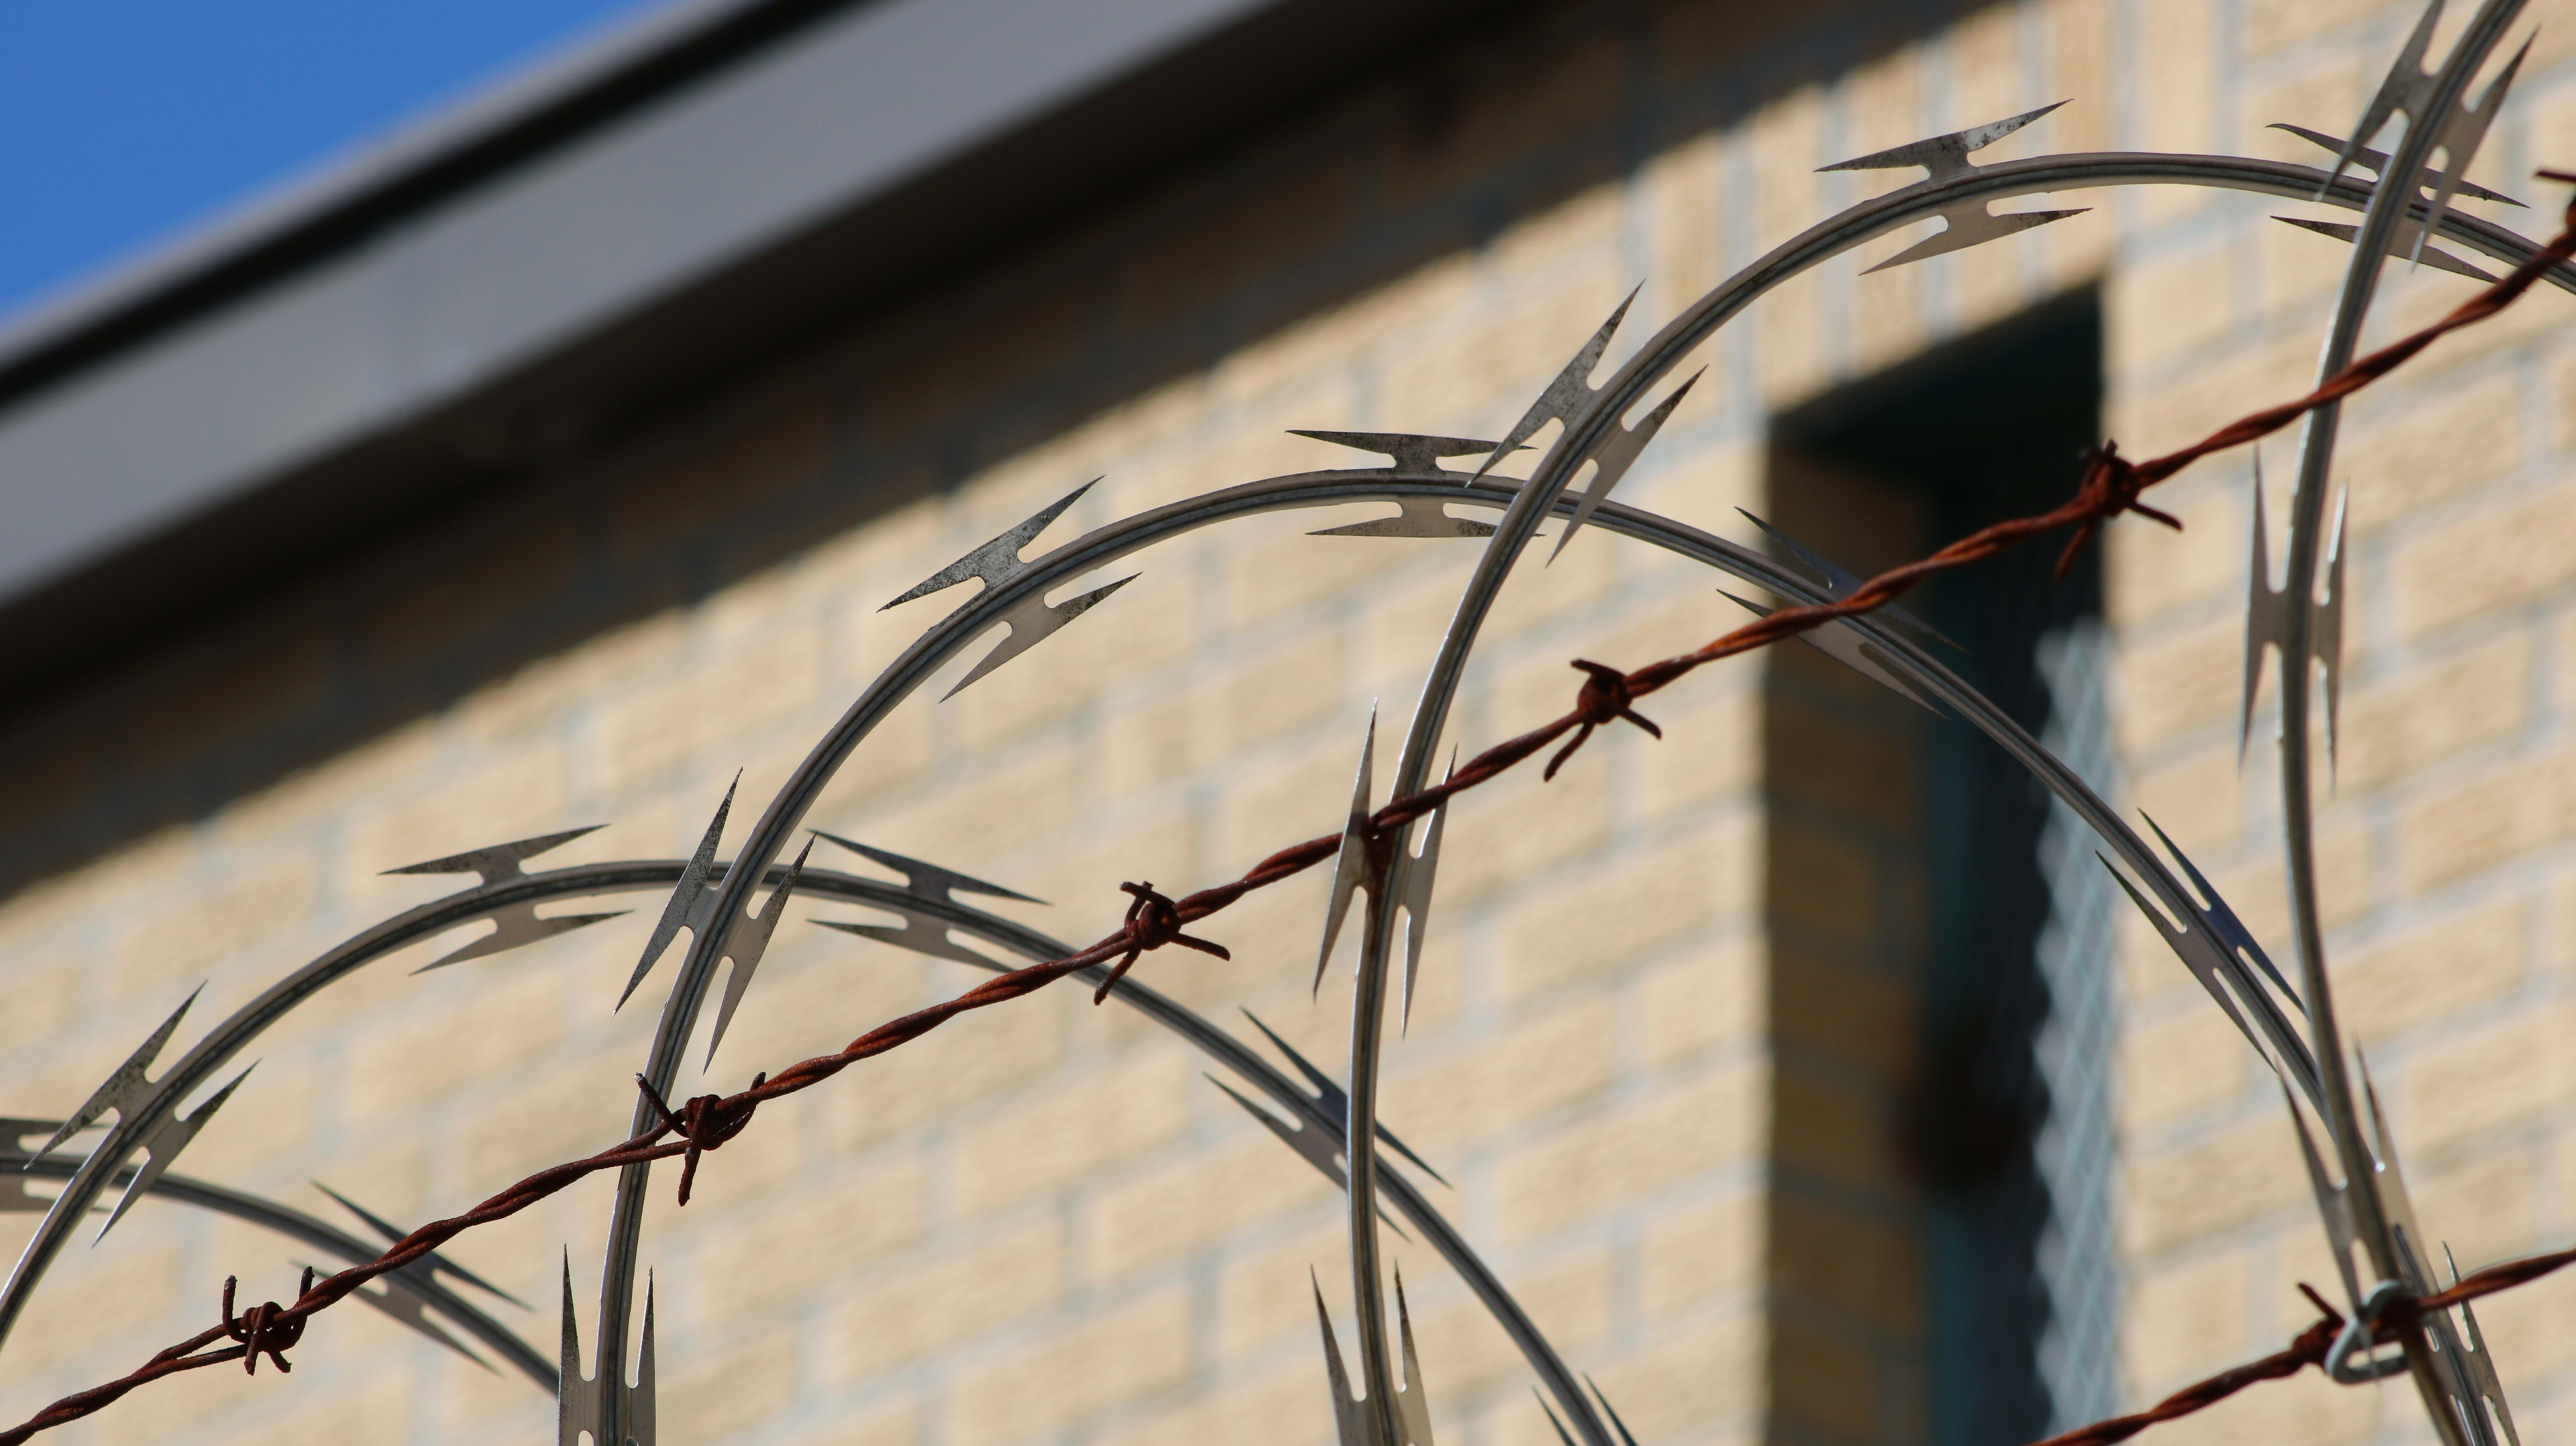 Bijzondere ontsnappingspoging: gevangene probeert via kliko te vluchten